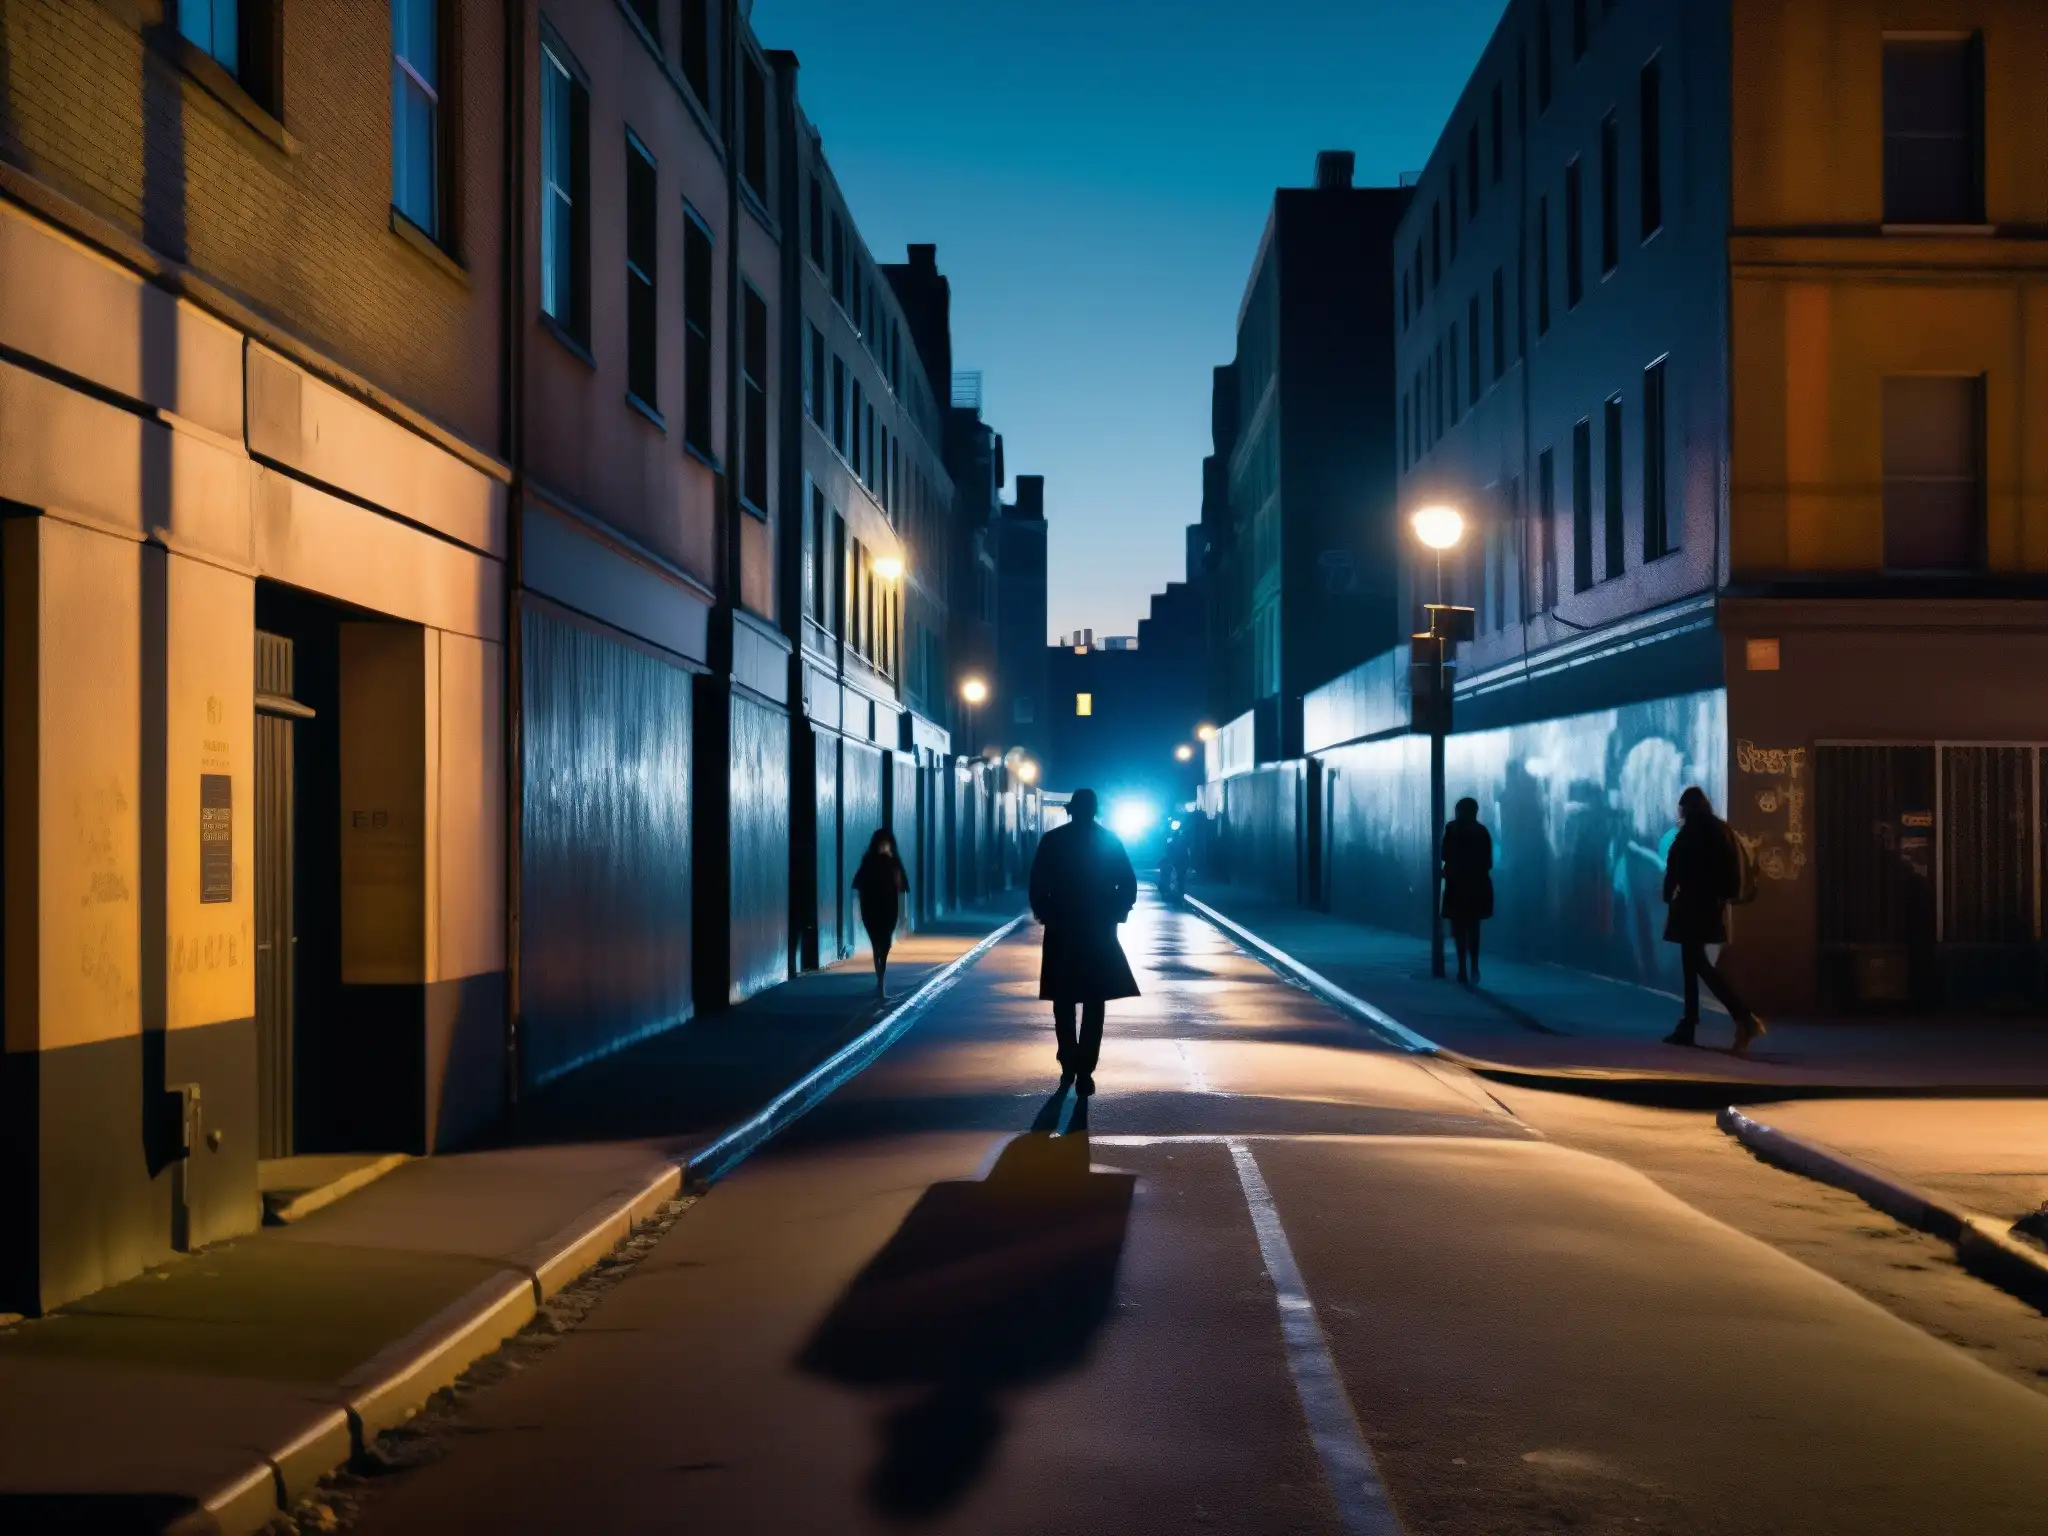 Imagen nocturna de una calle urbana con figuras en silueta, grafitis y una sensación de inquietud